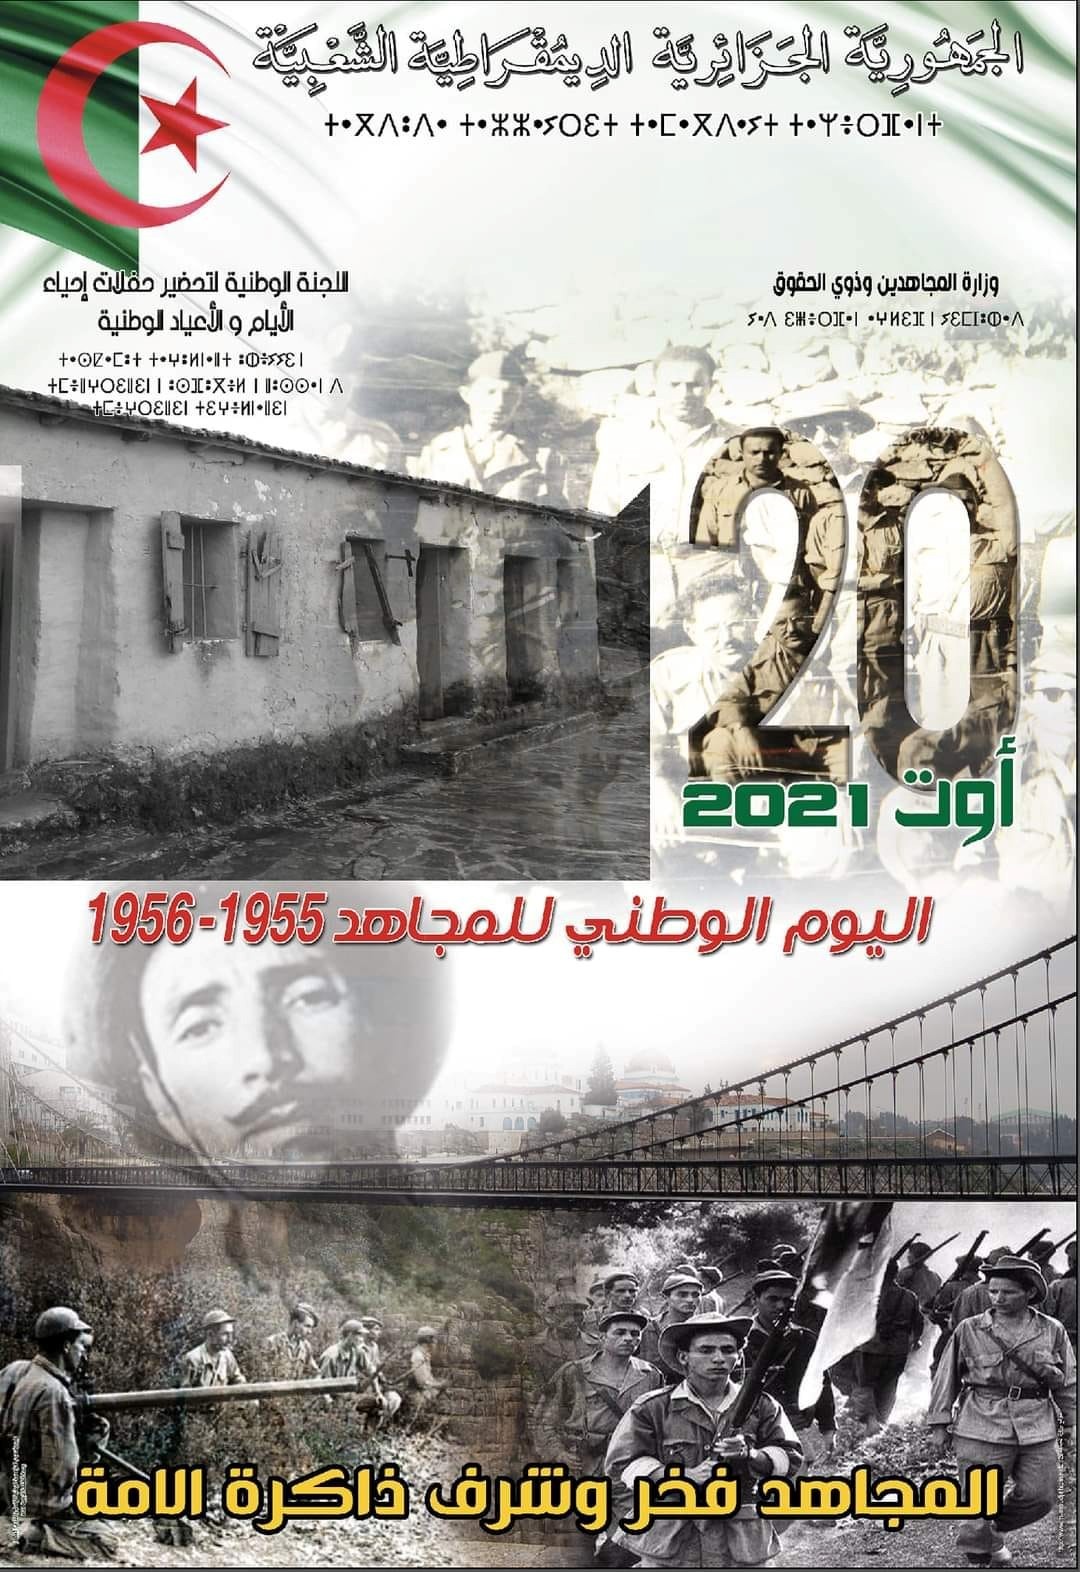 Le slogan de la Journée nationale des moudjahidines commémorant la double mémoire de :